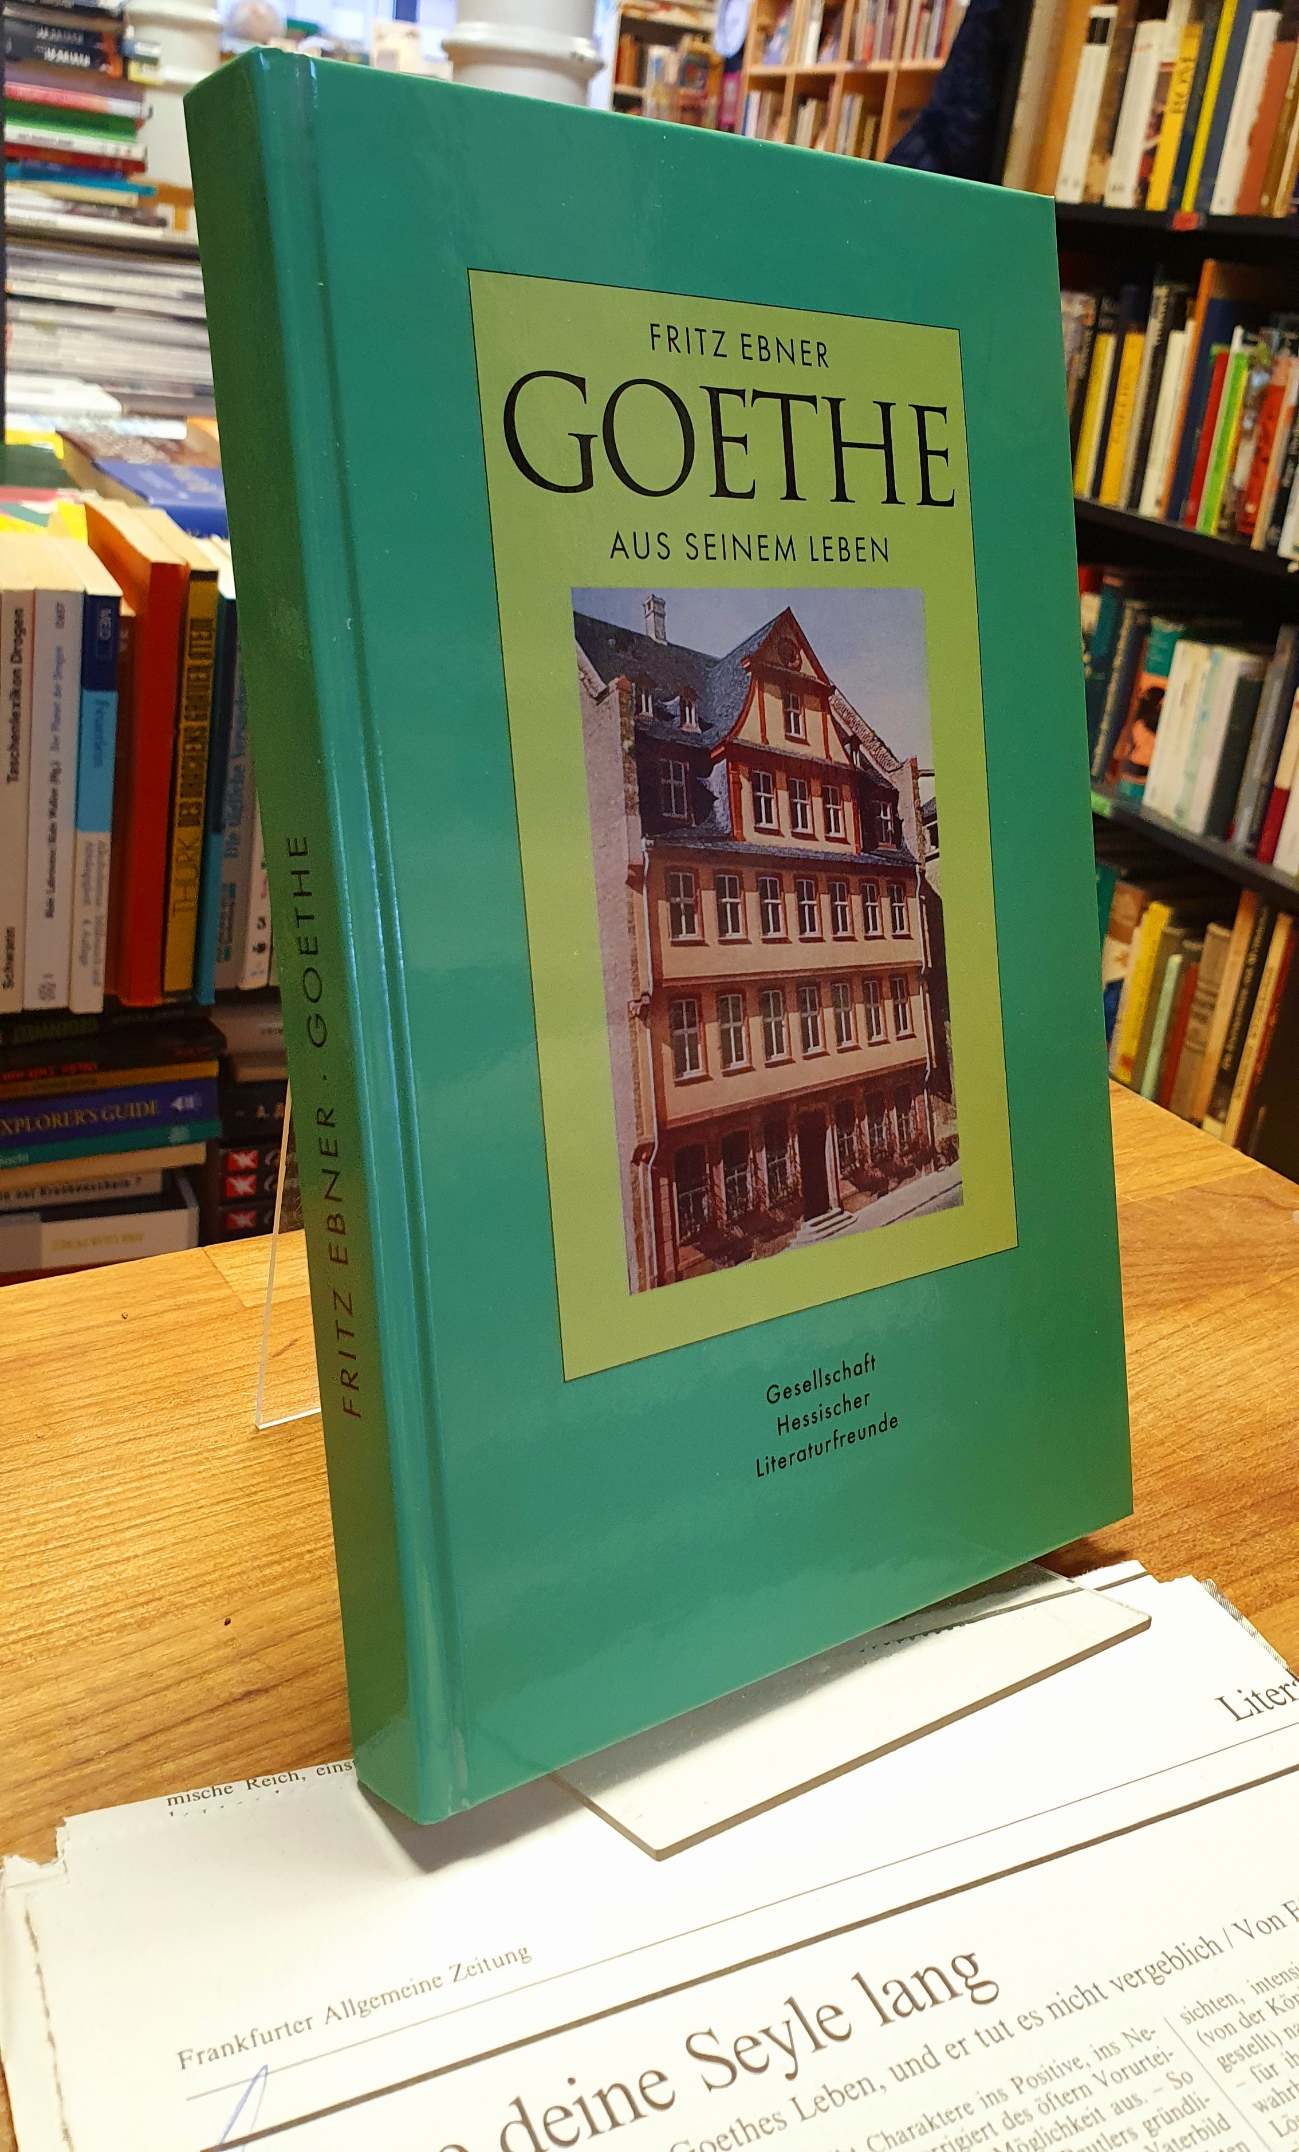 Ebner, Goethe – Aus seinem Leben – Reden, Vorträge, Zeitbilder,